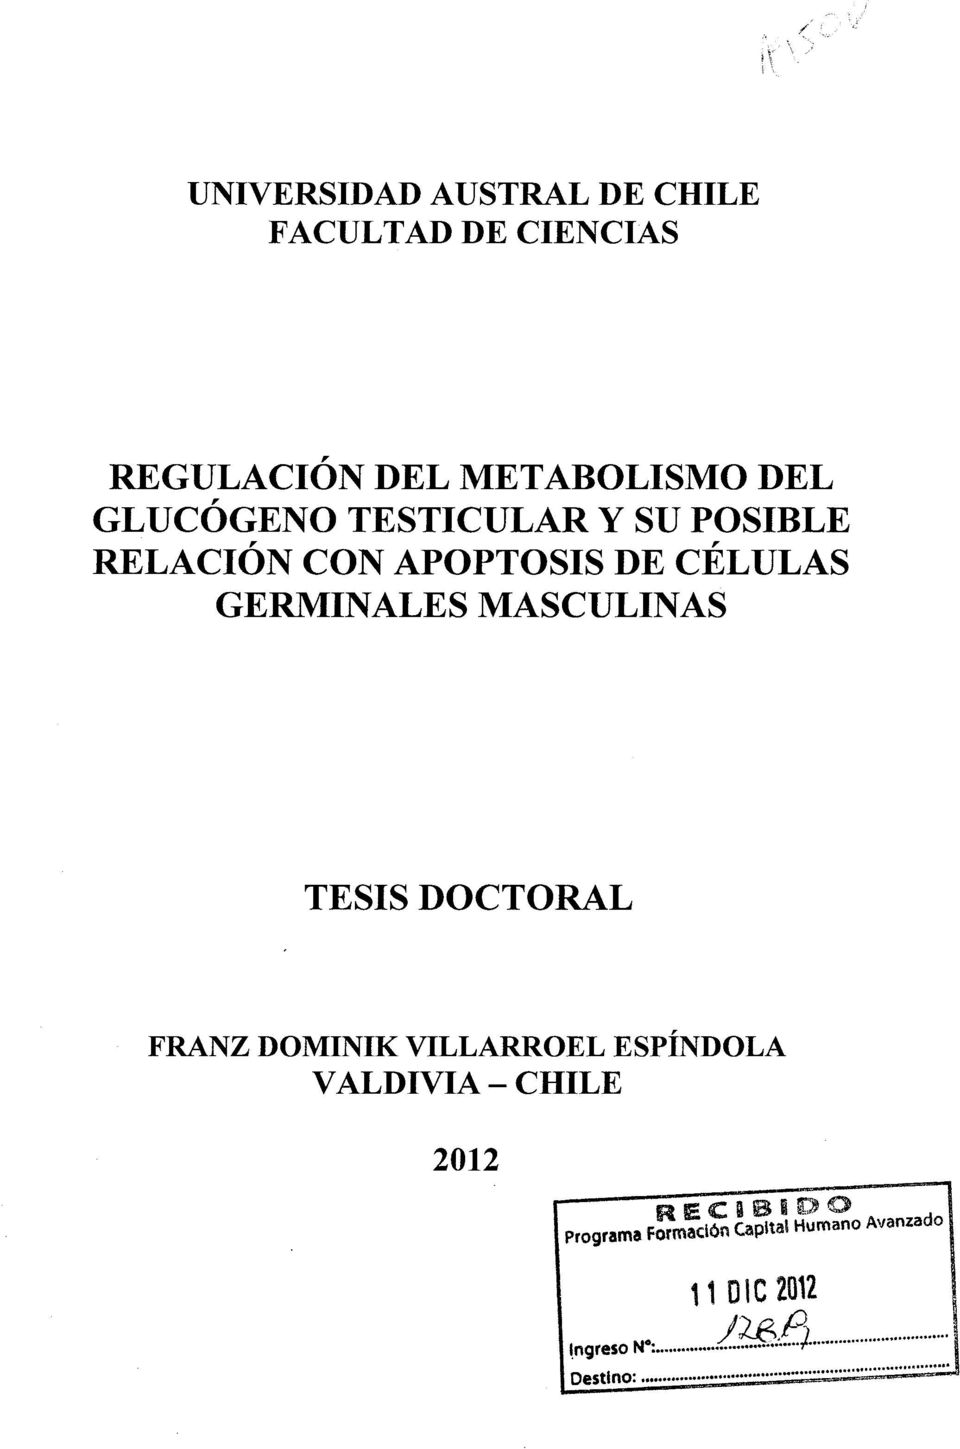 MASCULINAS TESIS DOCTORAL FRANZ DOMINIK VILLARROEL ESPÍNDOLA V ALDIVIA- CHILE 2012